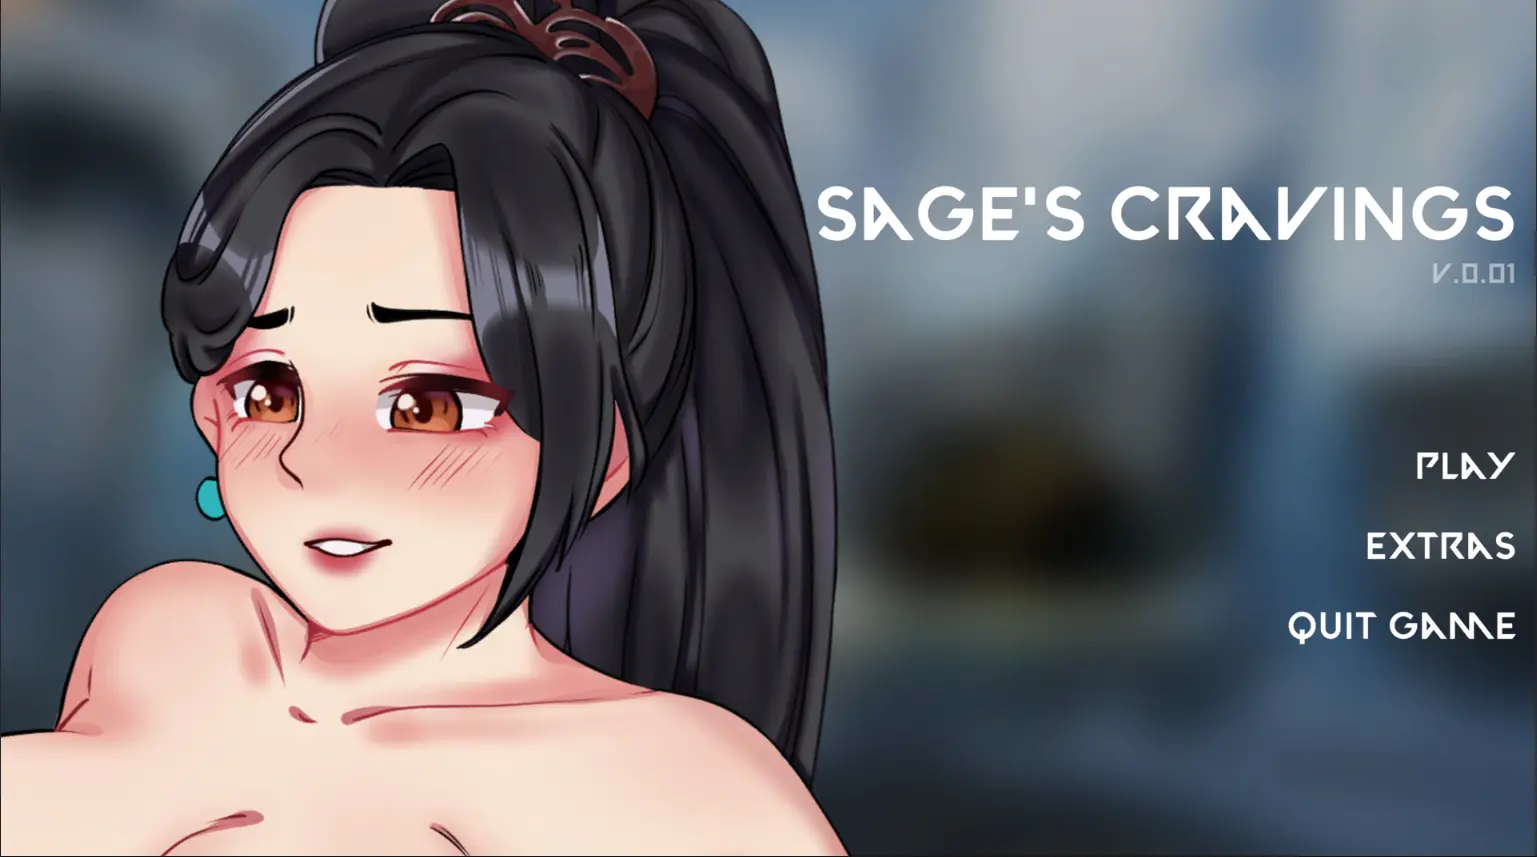 Sage's Cravings main image